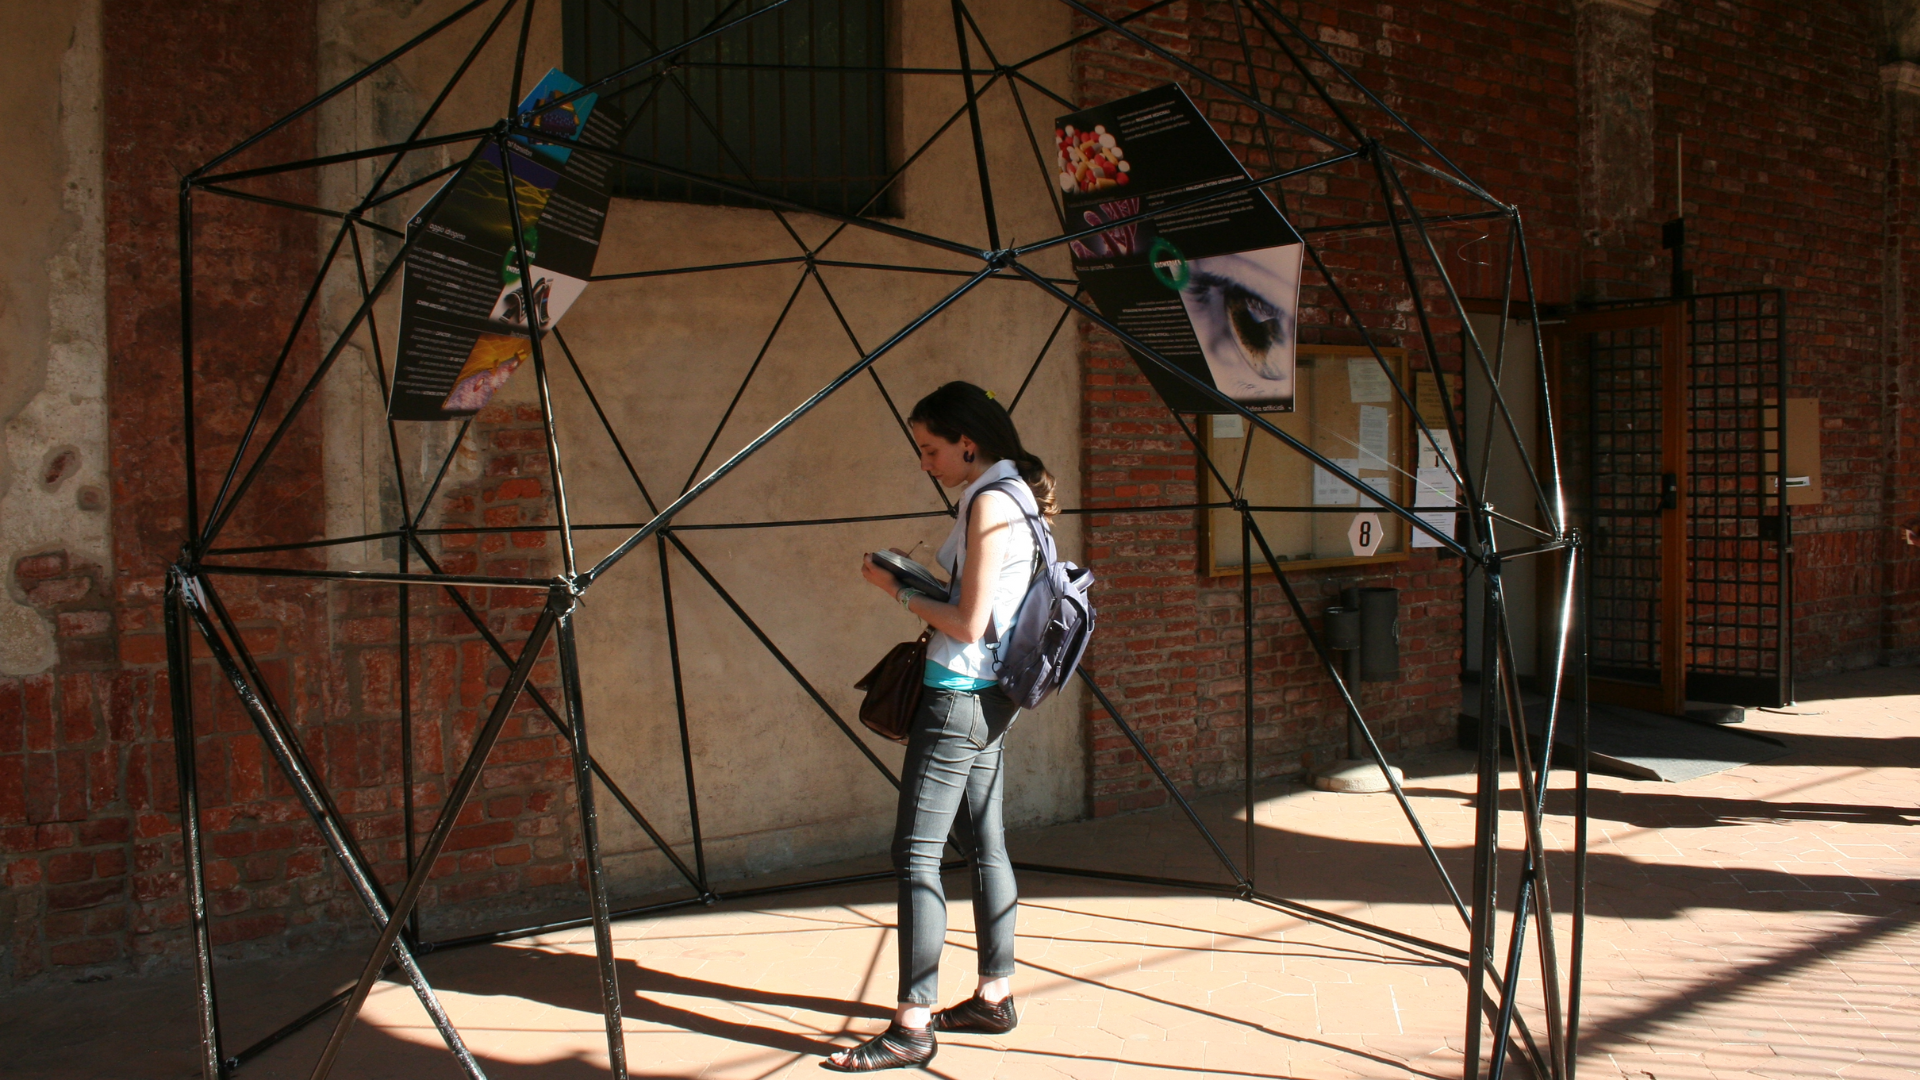 2013 – Mostra "Grafene: il futuro 2D, come ci cambierà la vita" presso l'Università degli Studi di Milano